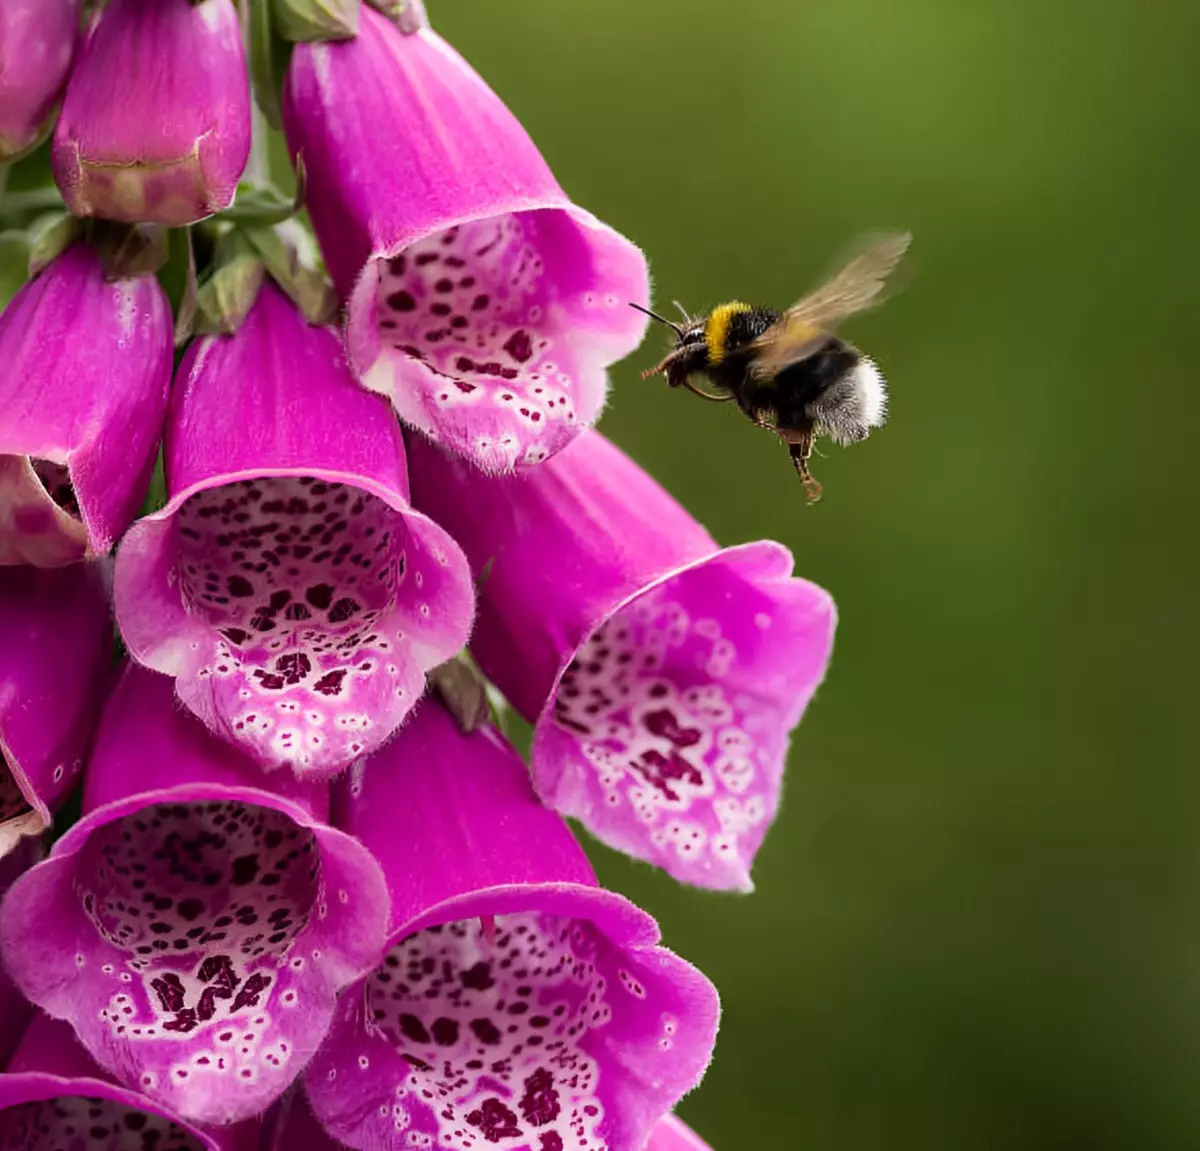 abeille pres des fleurs rose intense sous forme de cloche de digitale